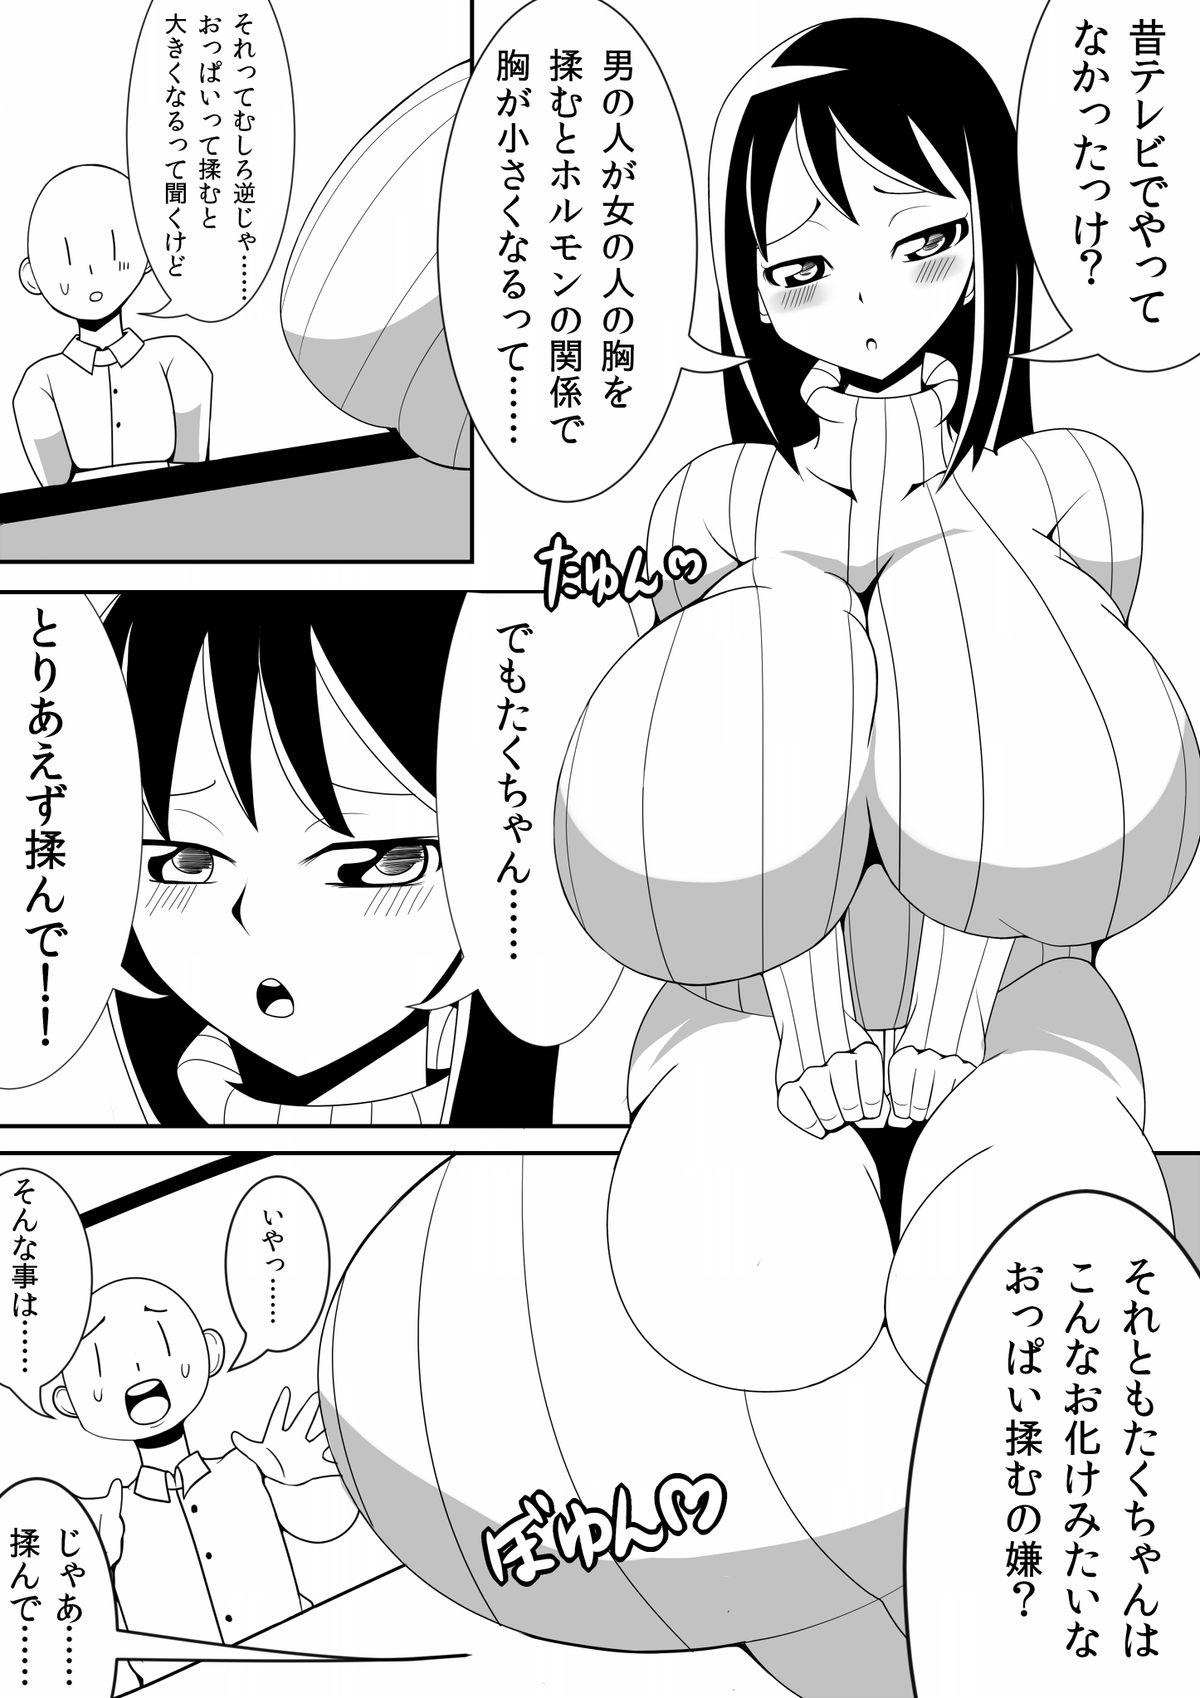 Mms Asaokitara Oppai Konnani ga Okkiku Nacchatta First Time - Page 5